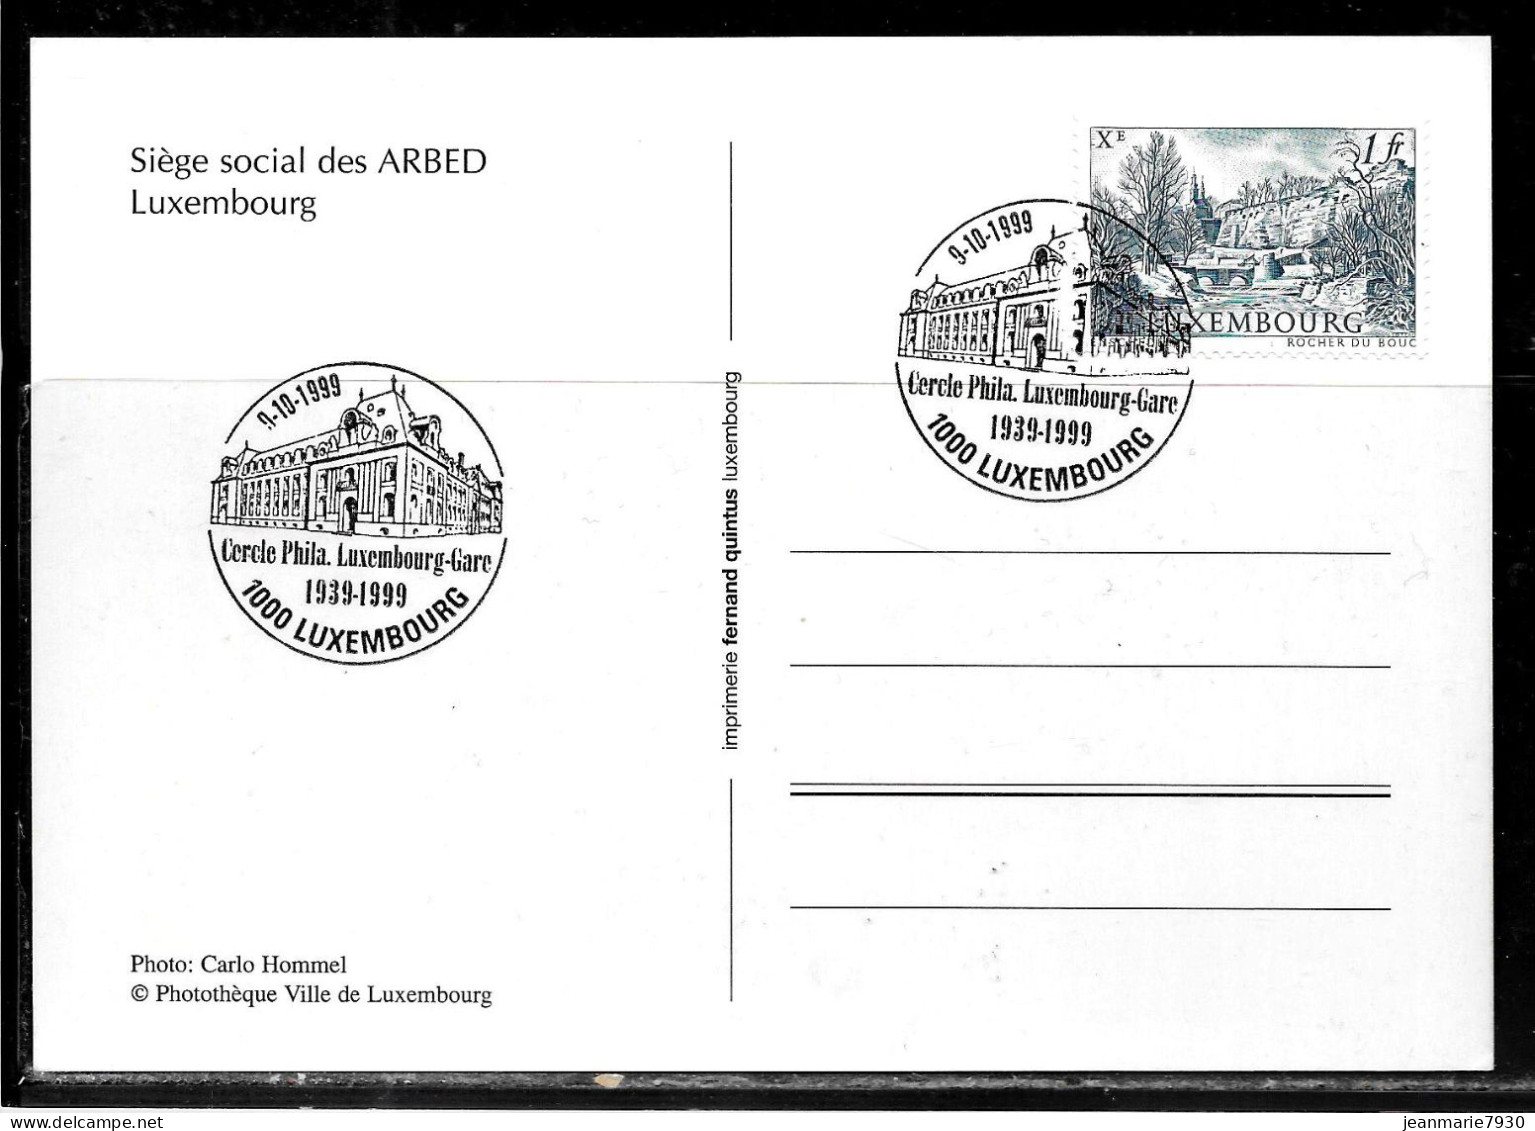 H366 - CARTE POSTALE DE LUXEMBOURG DU 09/10/99 - SIEGE DE L'ARBED - Covers & Documents